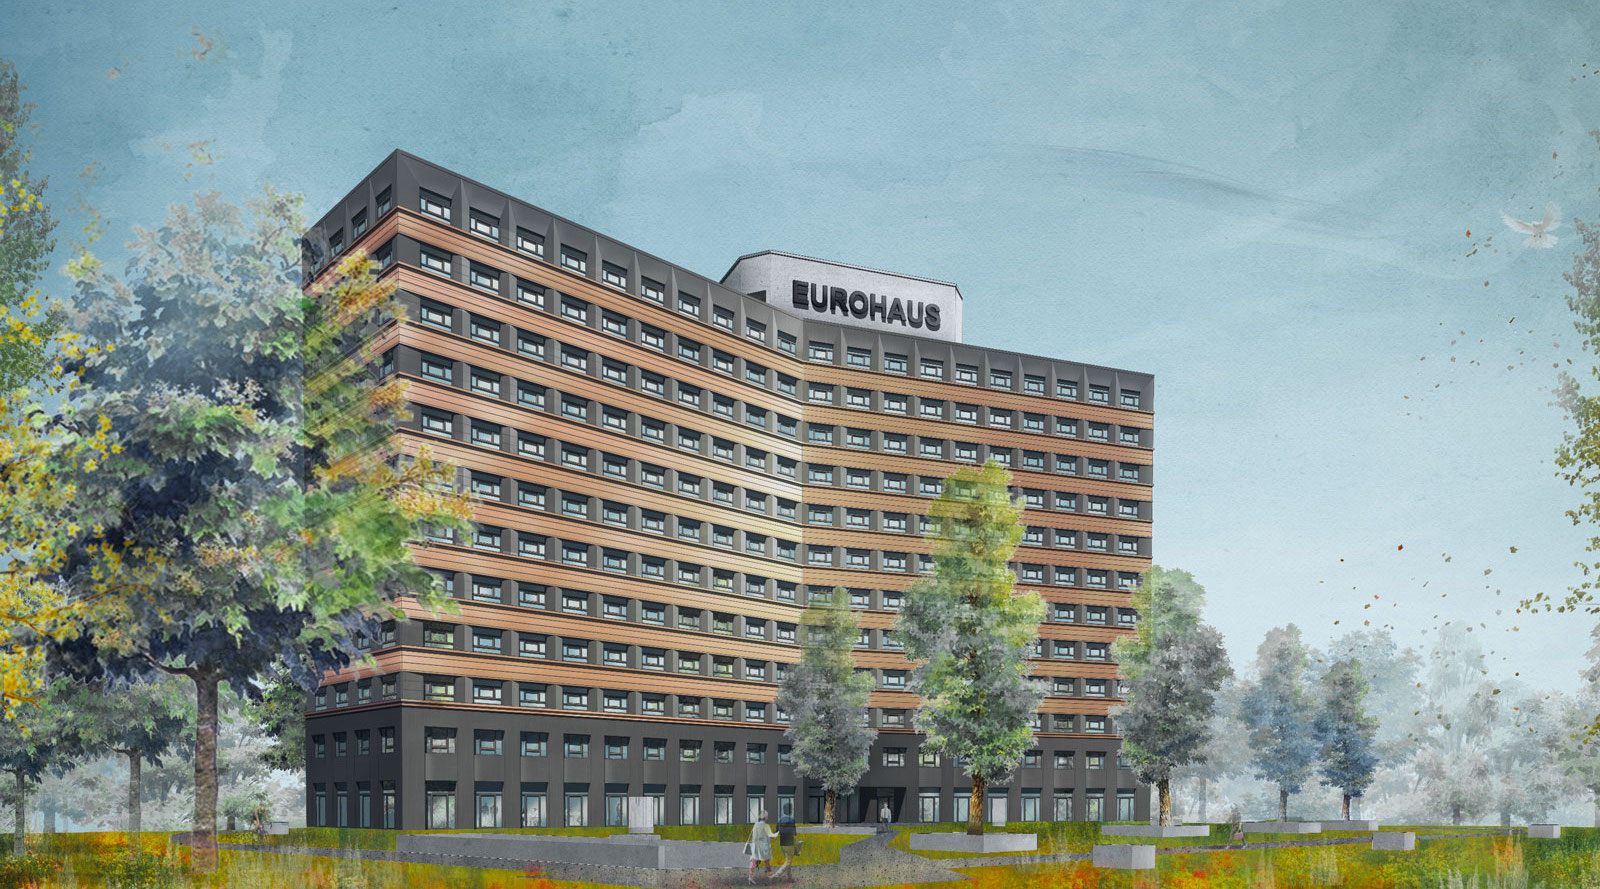 202201.sfa.eurohaus.jpg